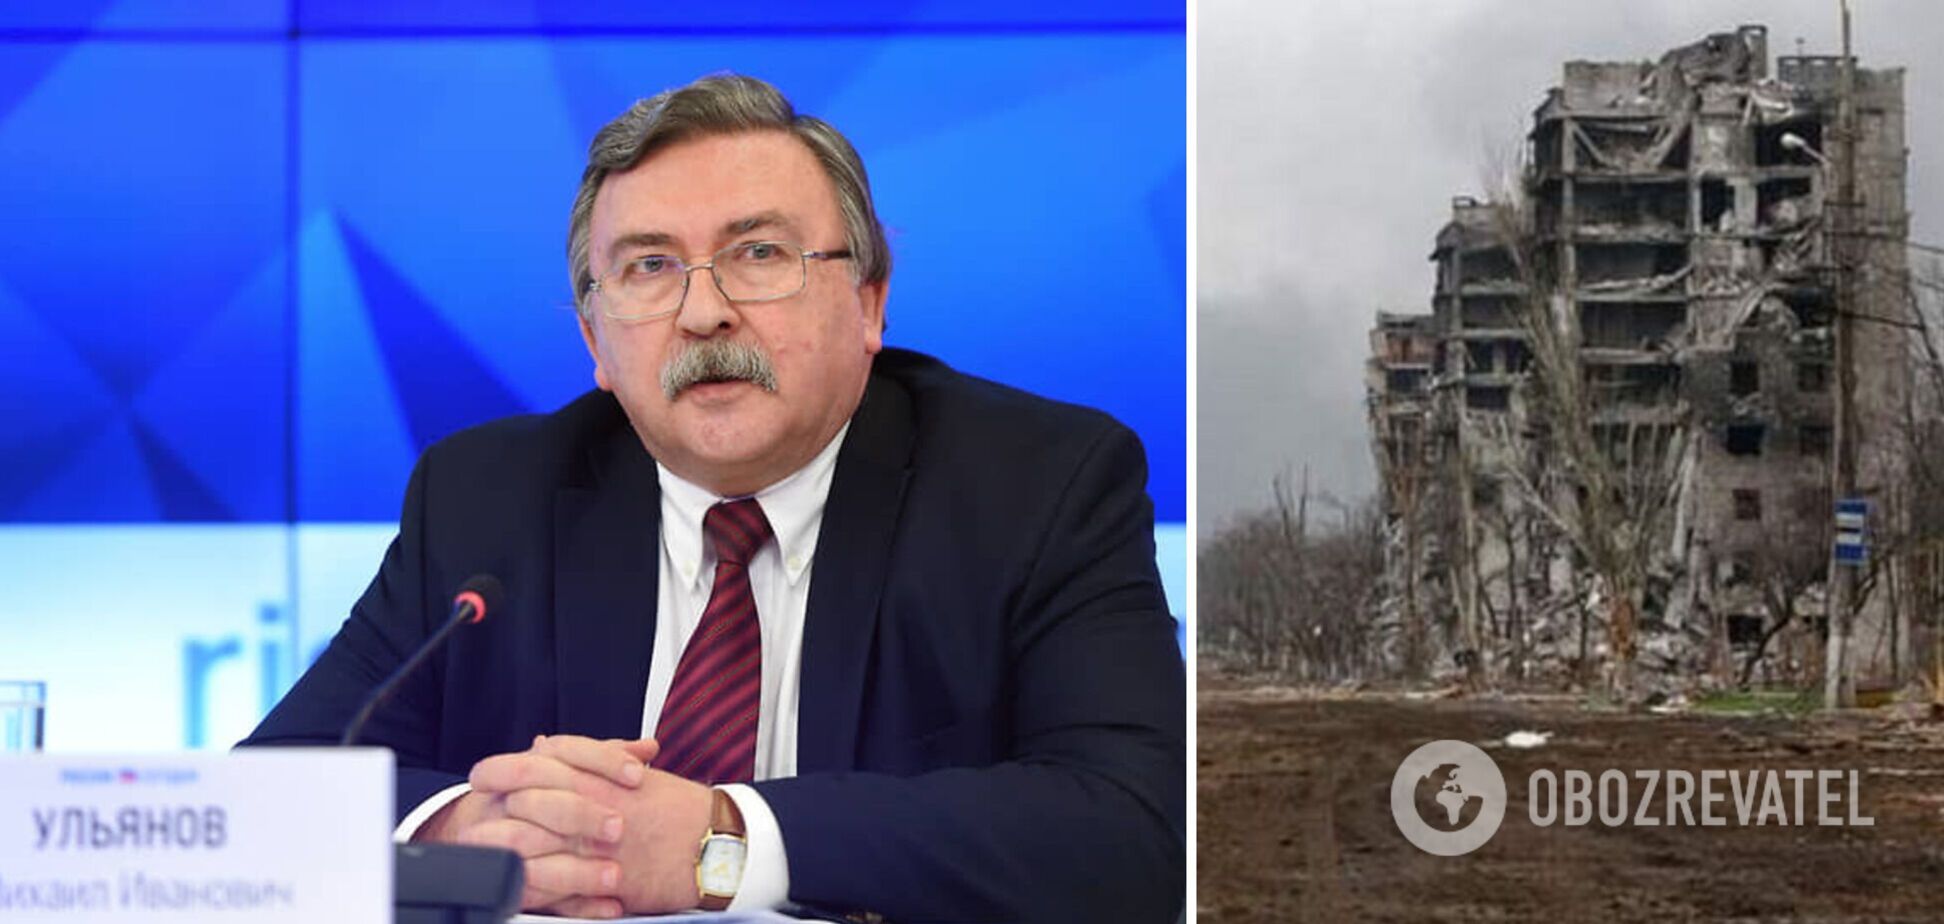 'Жодної пощади українцям': офіційний представник РФ у Відні зробив цинічну заяву, а потім спробував виправдатися 